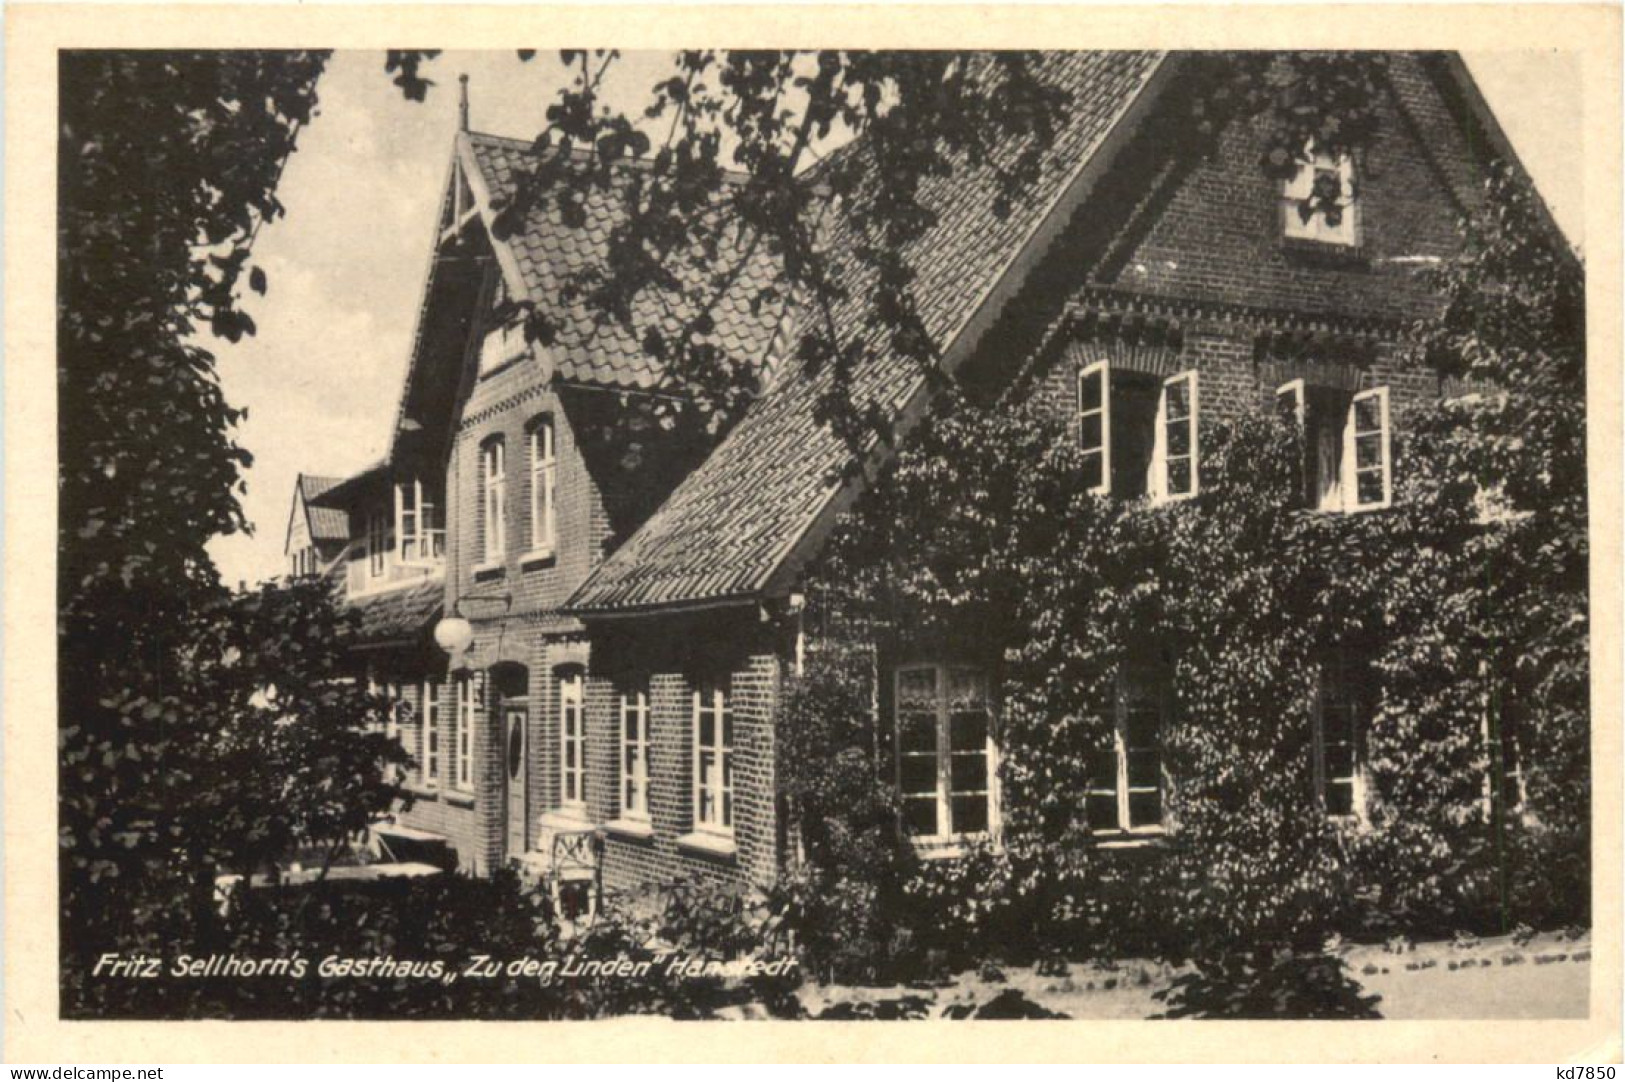 Hanstedt über Harburg - Gasthaus Fritz Sellhorns Gathaus - Rotenburg (Wümme)